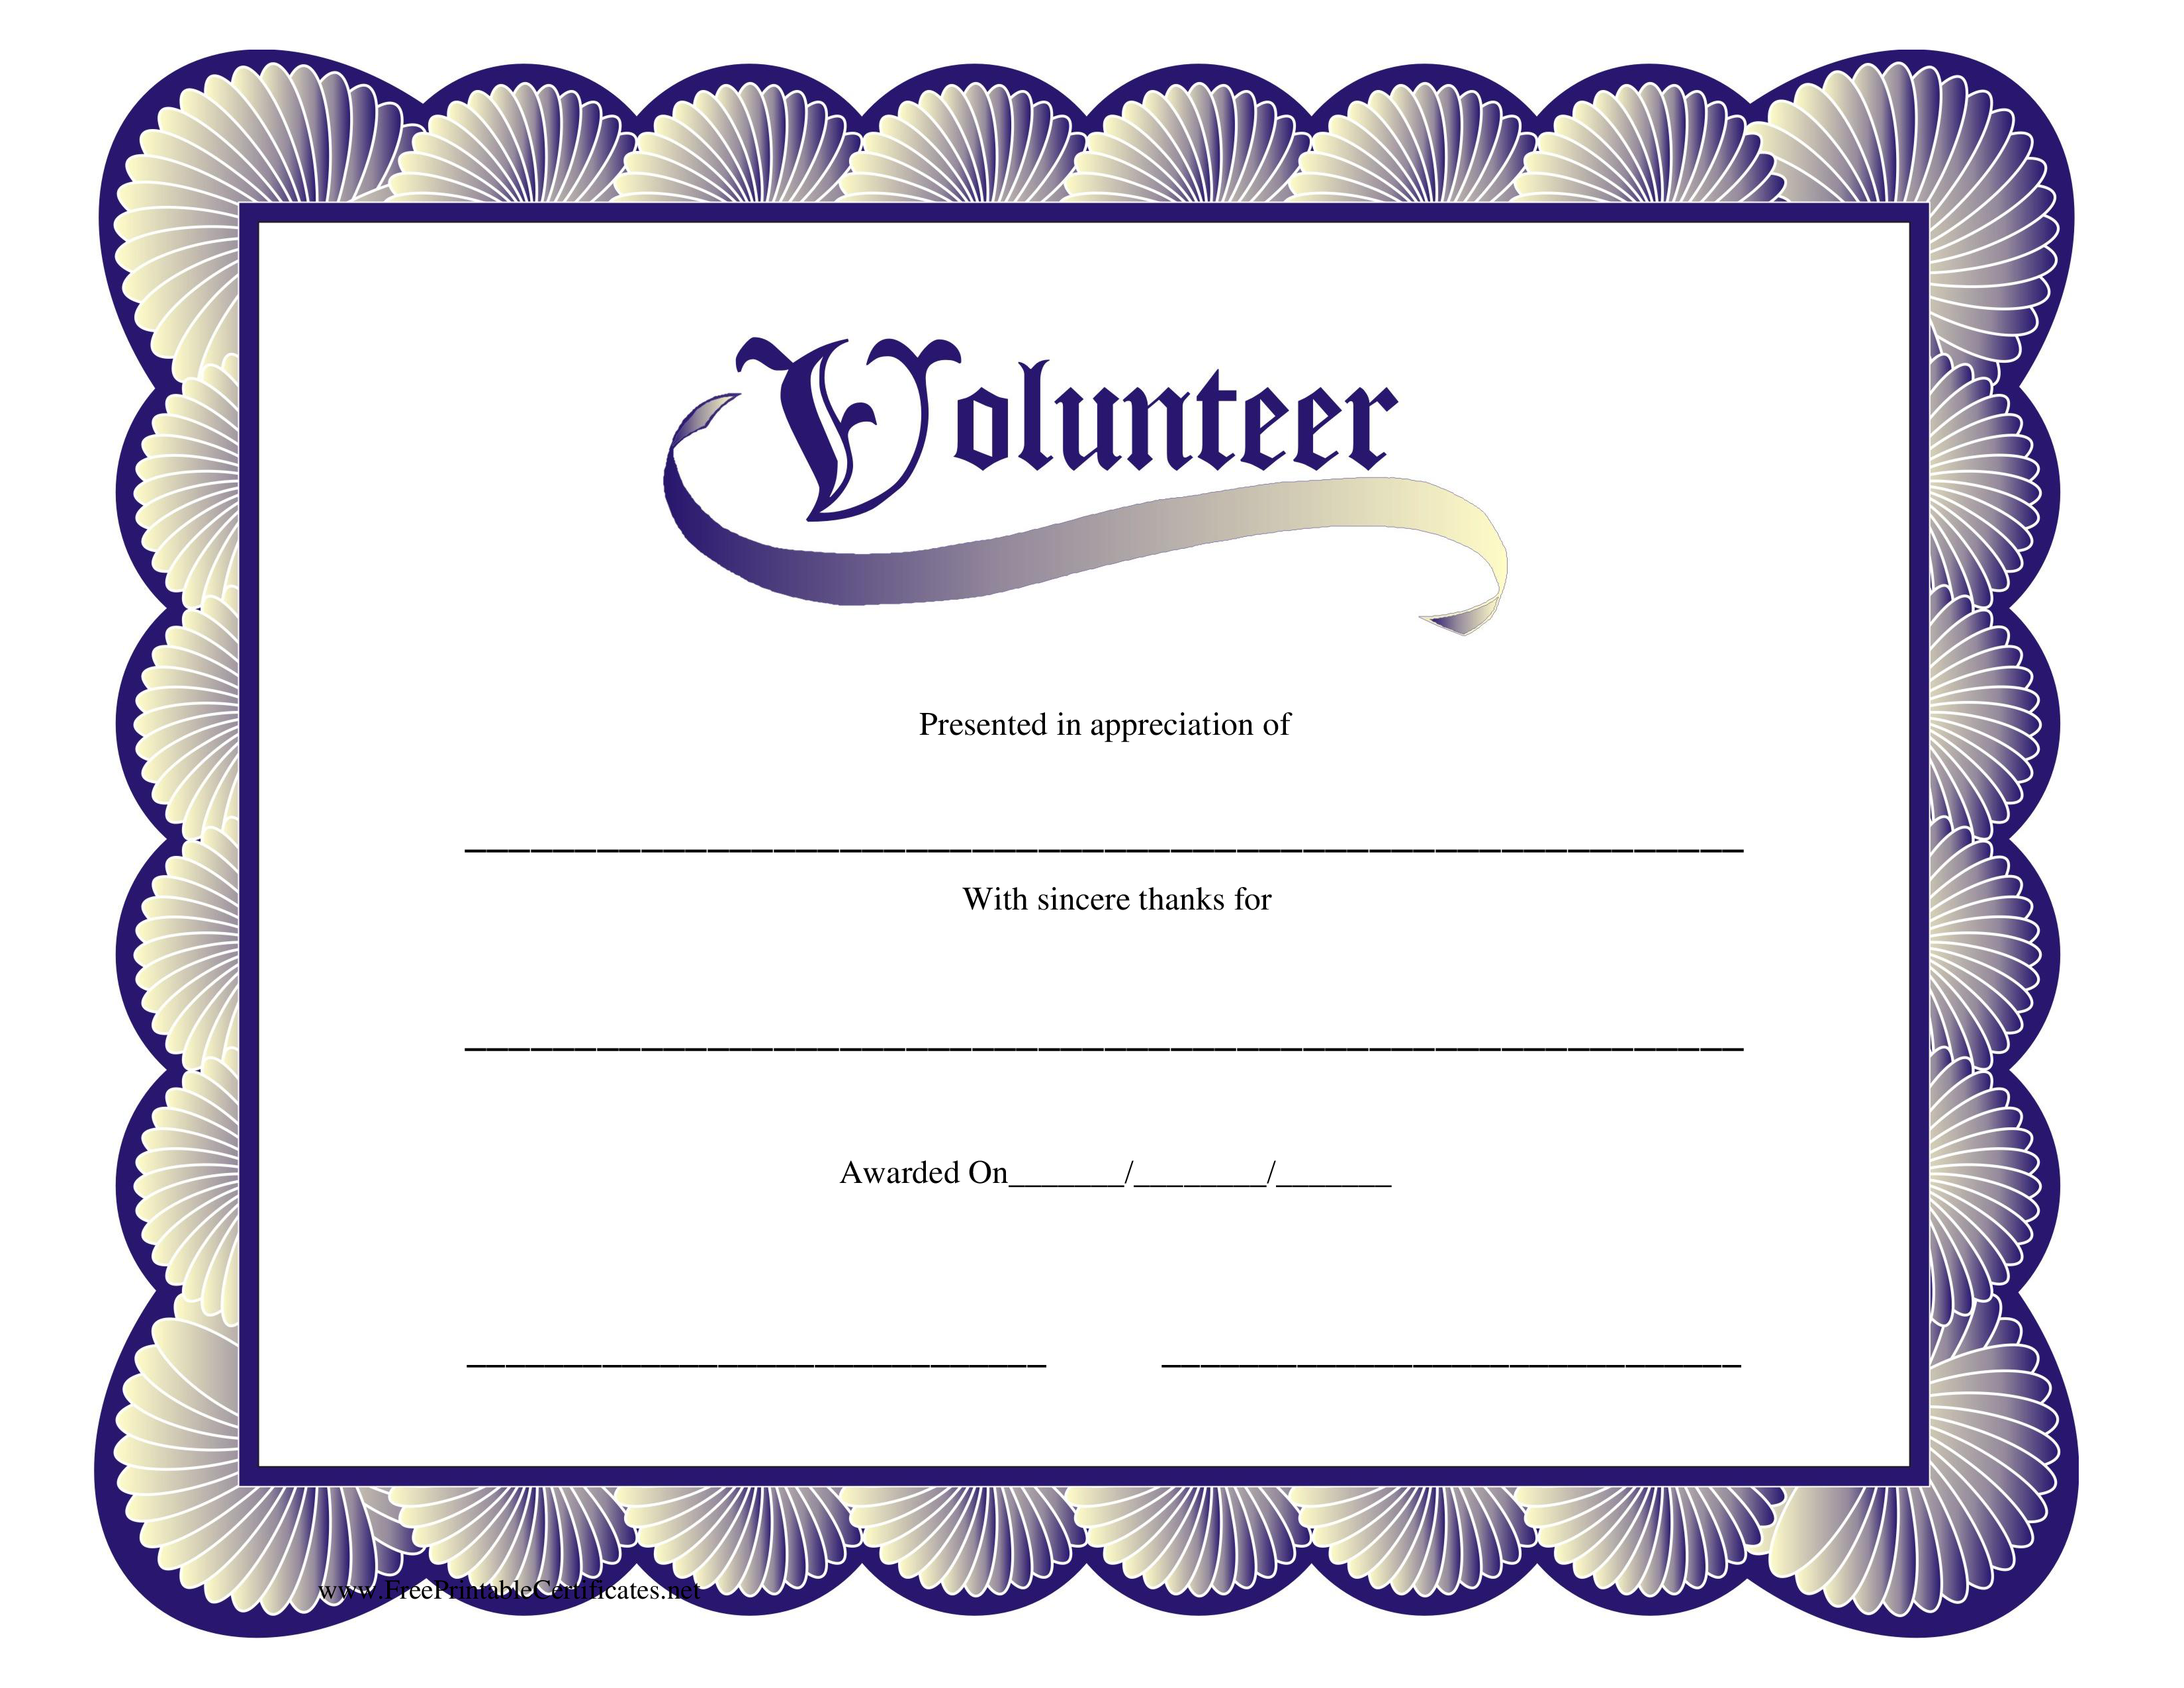 Kostenloses Volunteer Certificate For Volunteer Certificate Templates